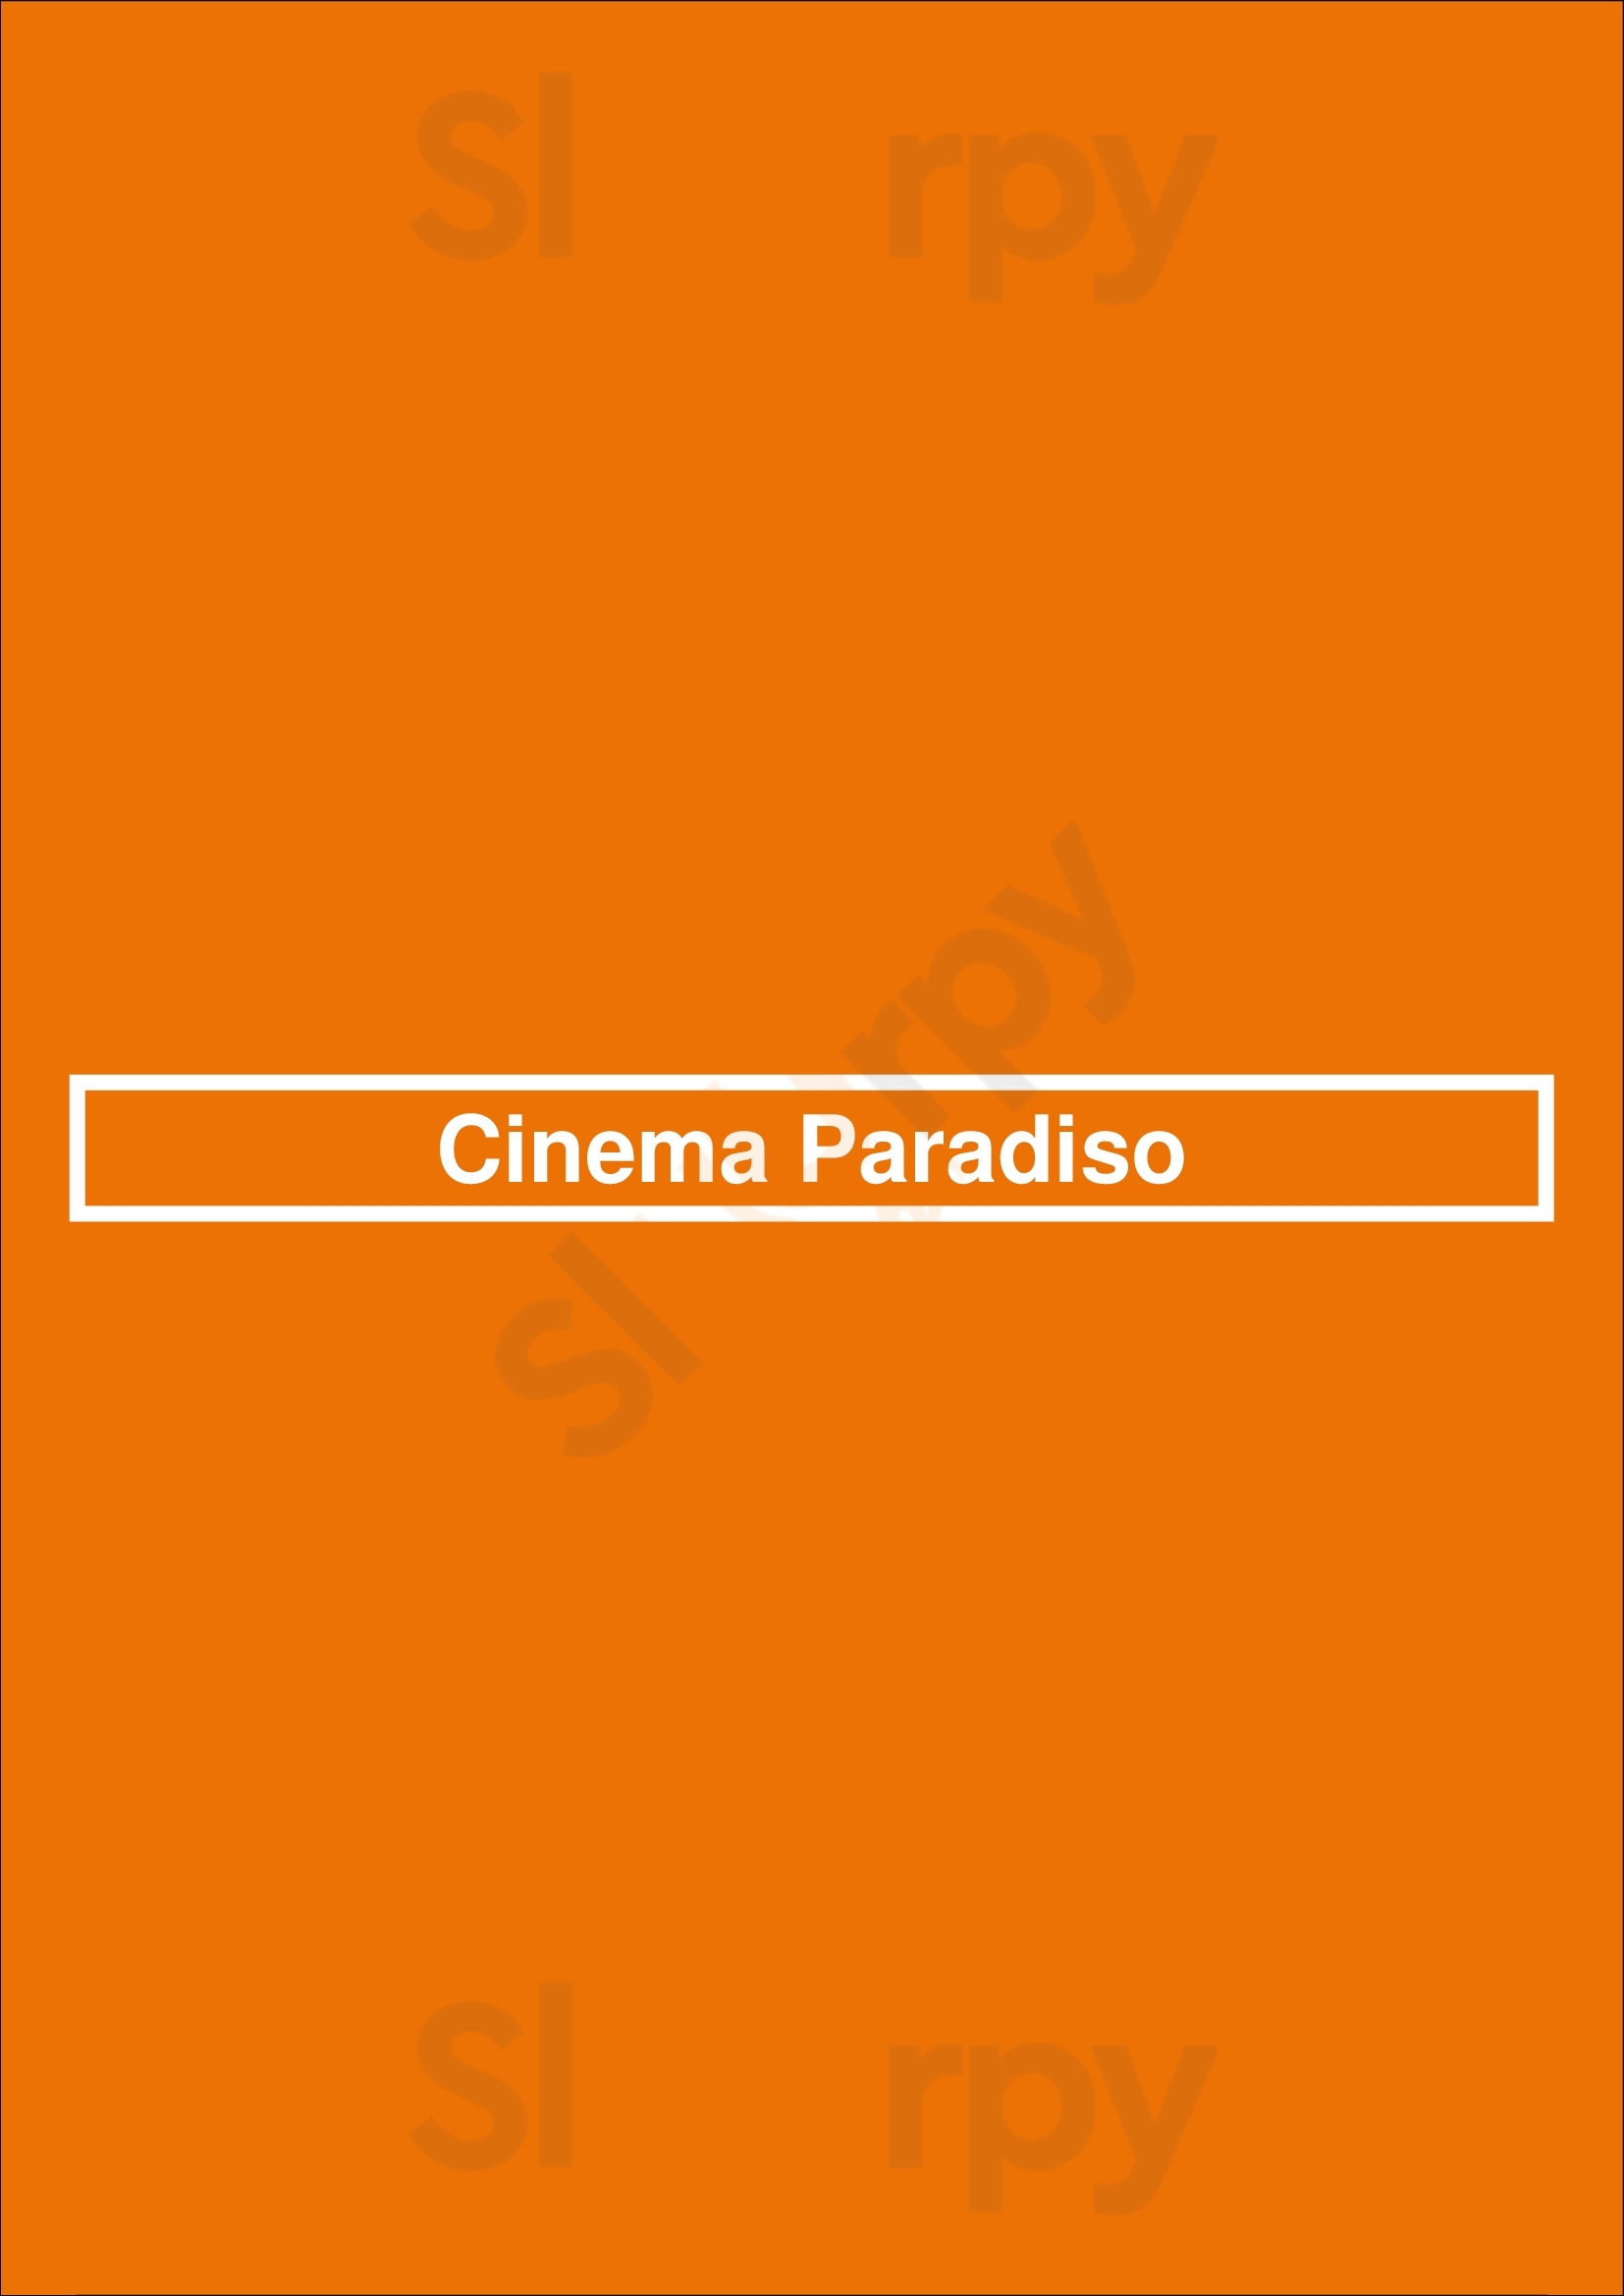 Cinema Paradiso Amsterdam Menu - 1